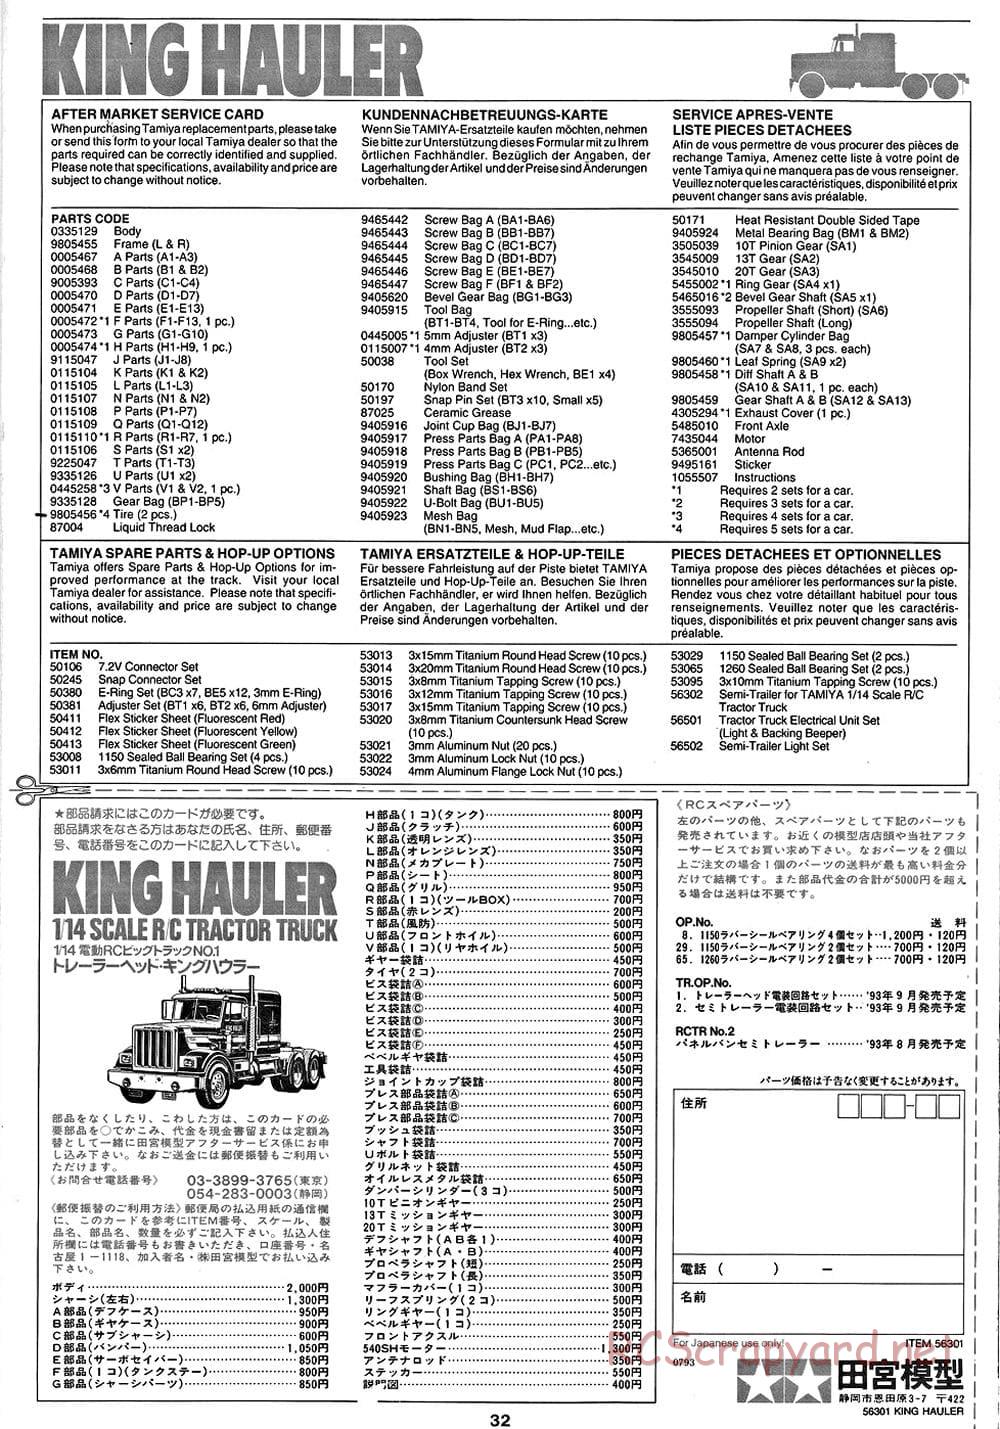 Tamiya - King Hauler - Manual - Page 32